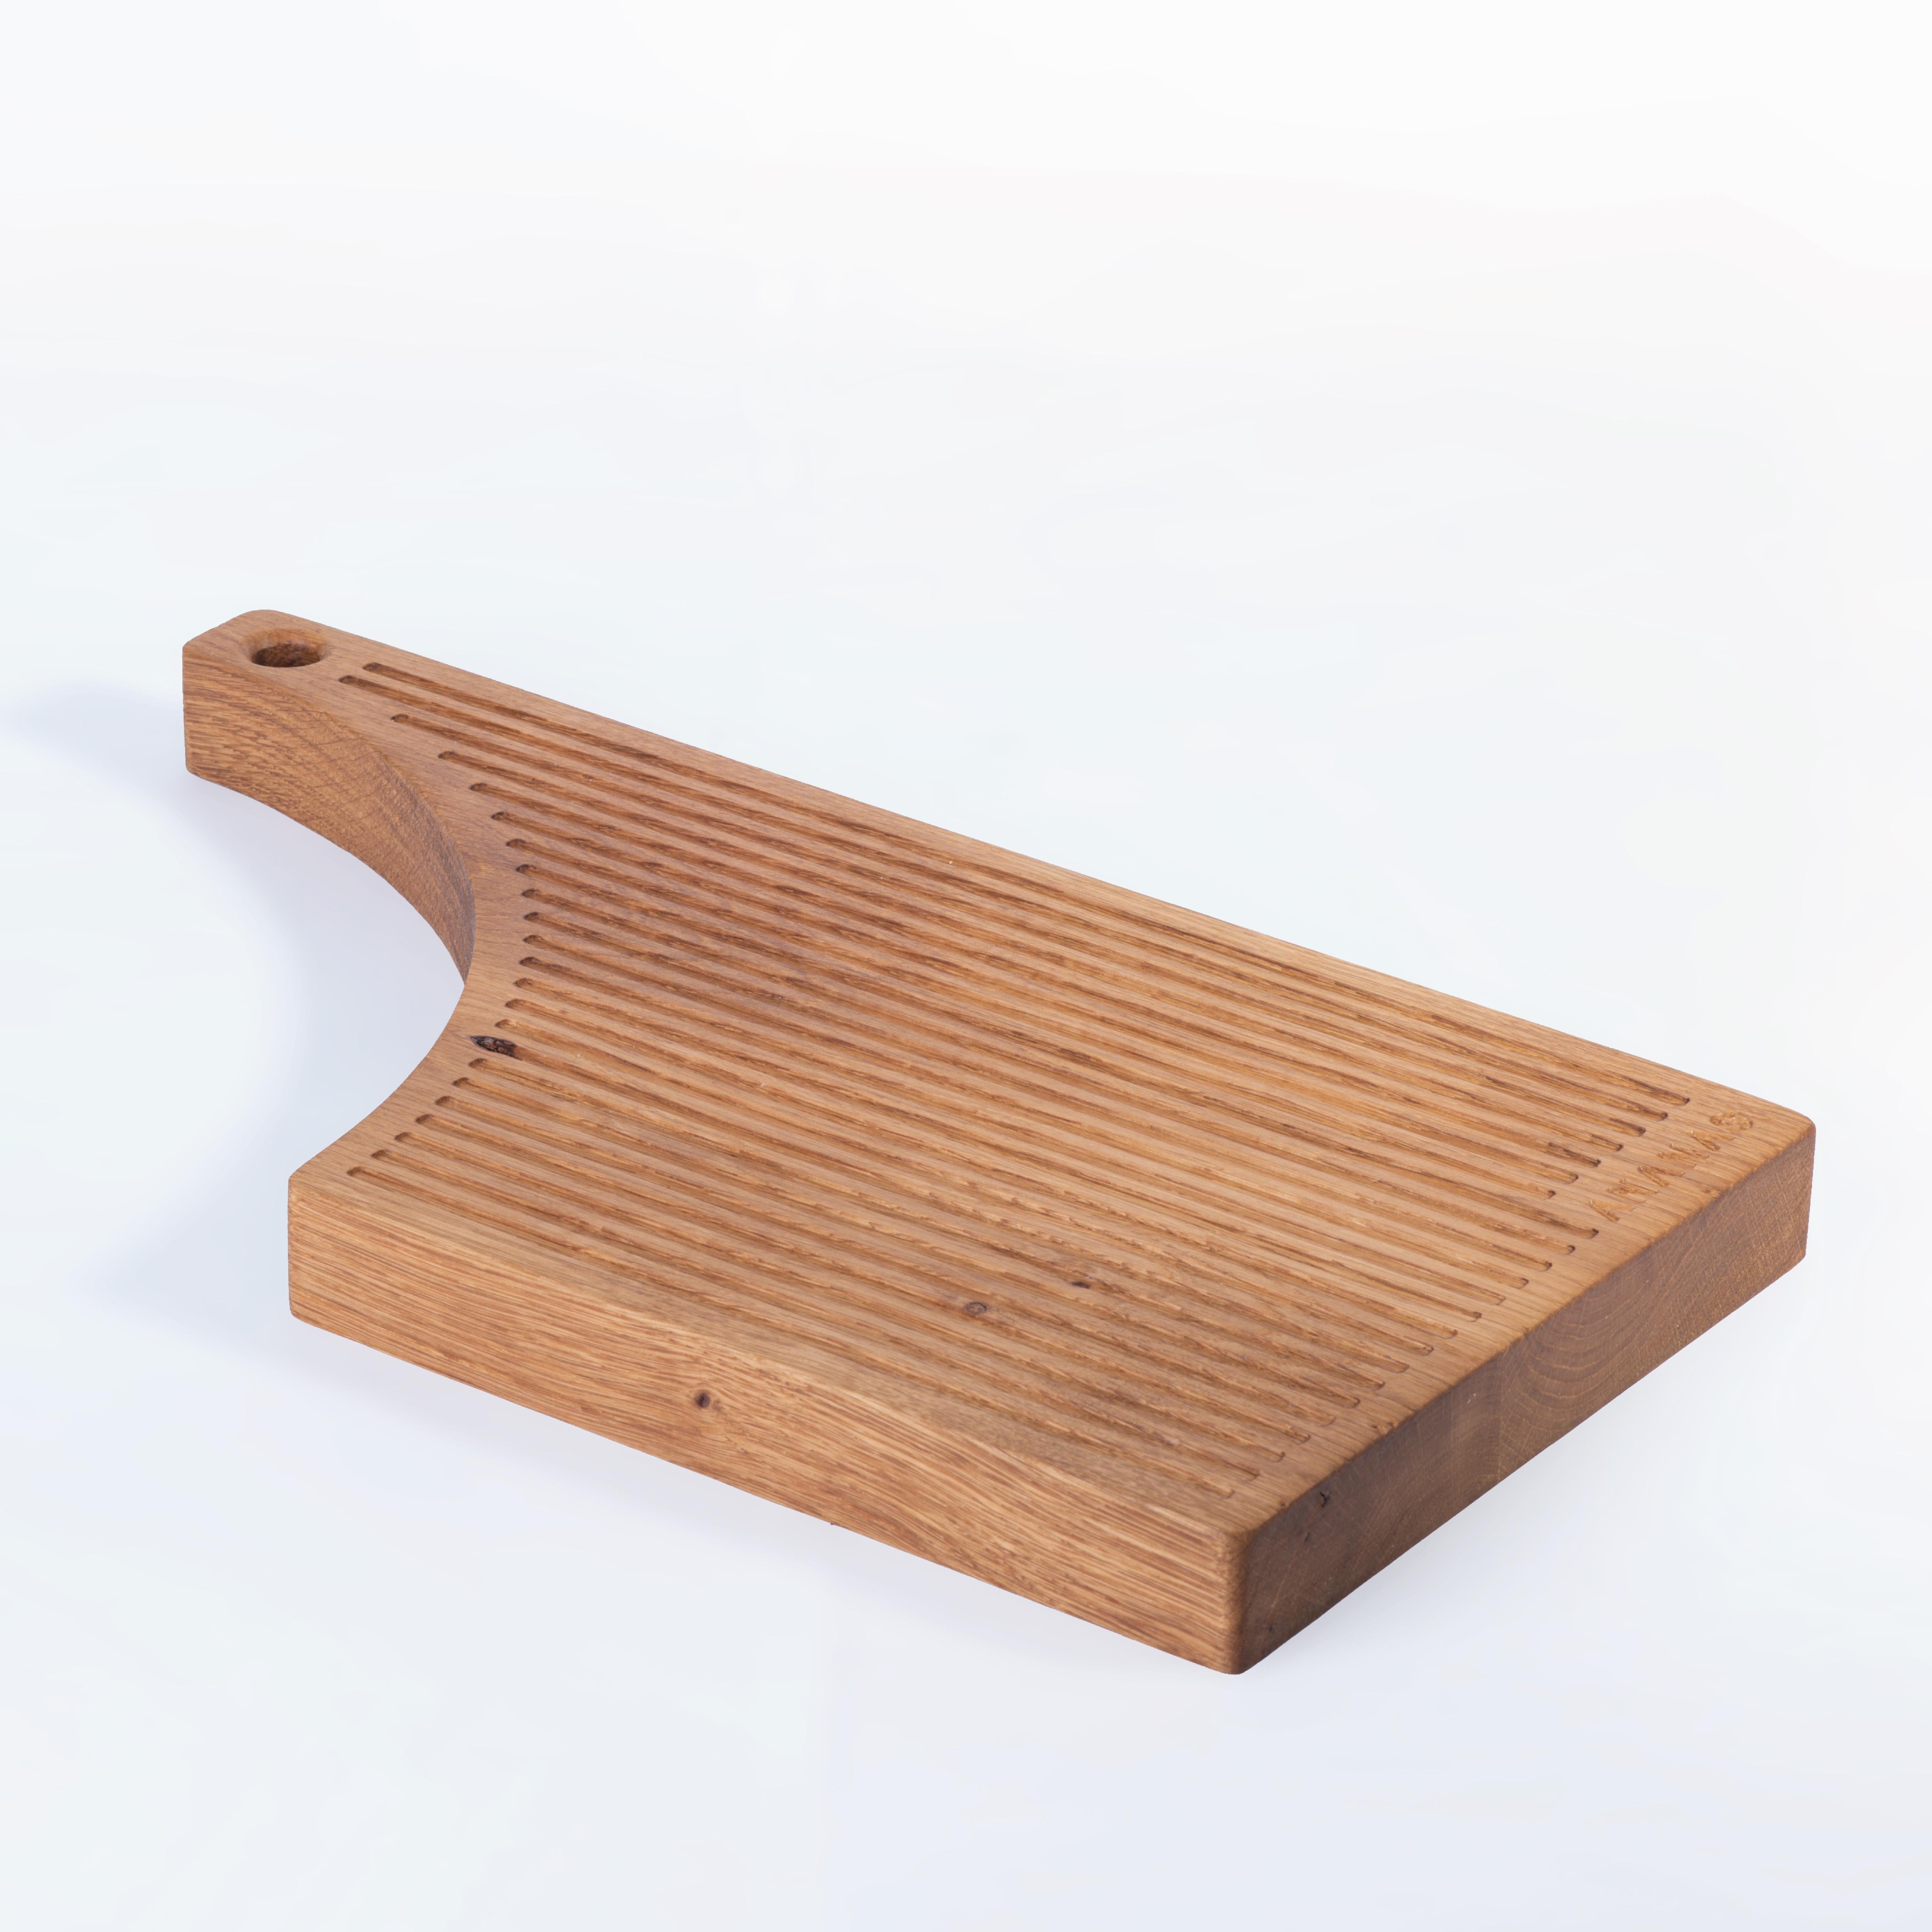 DADA ist aus massivem Eichenholz gefertigt und wurde für Service und Präsentation konzipiert. Die Anordnung der Rillen auf der Oberfläche verhindert, dass die Säfte der Lebensmittel abtropfen. Sie sind ideal für die Präsentation von Fisch, Käse und